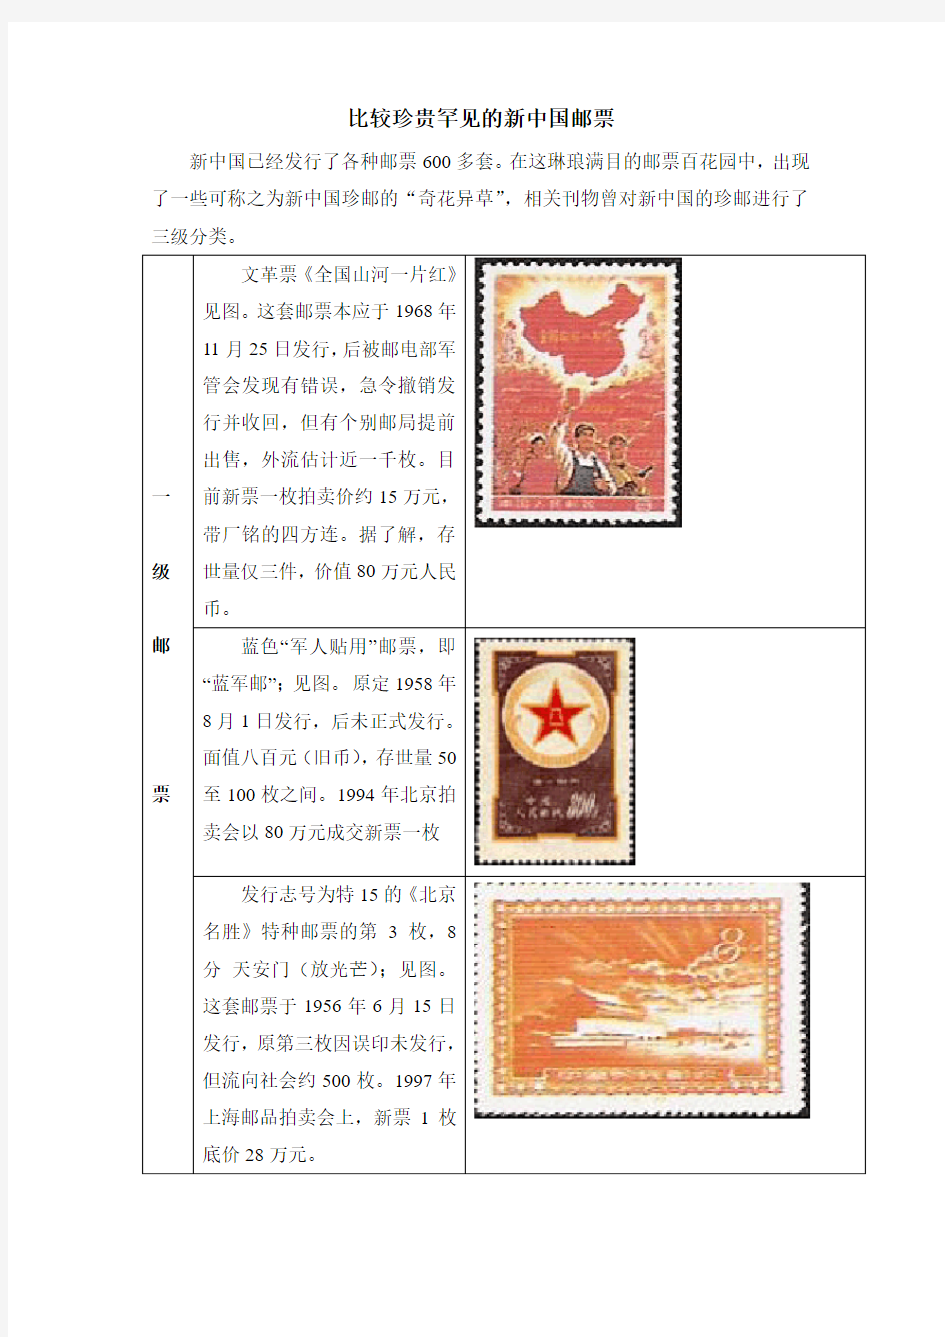 比较珍贵罕见的新中国邮票(绝对值得珍藏)